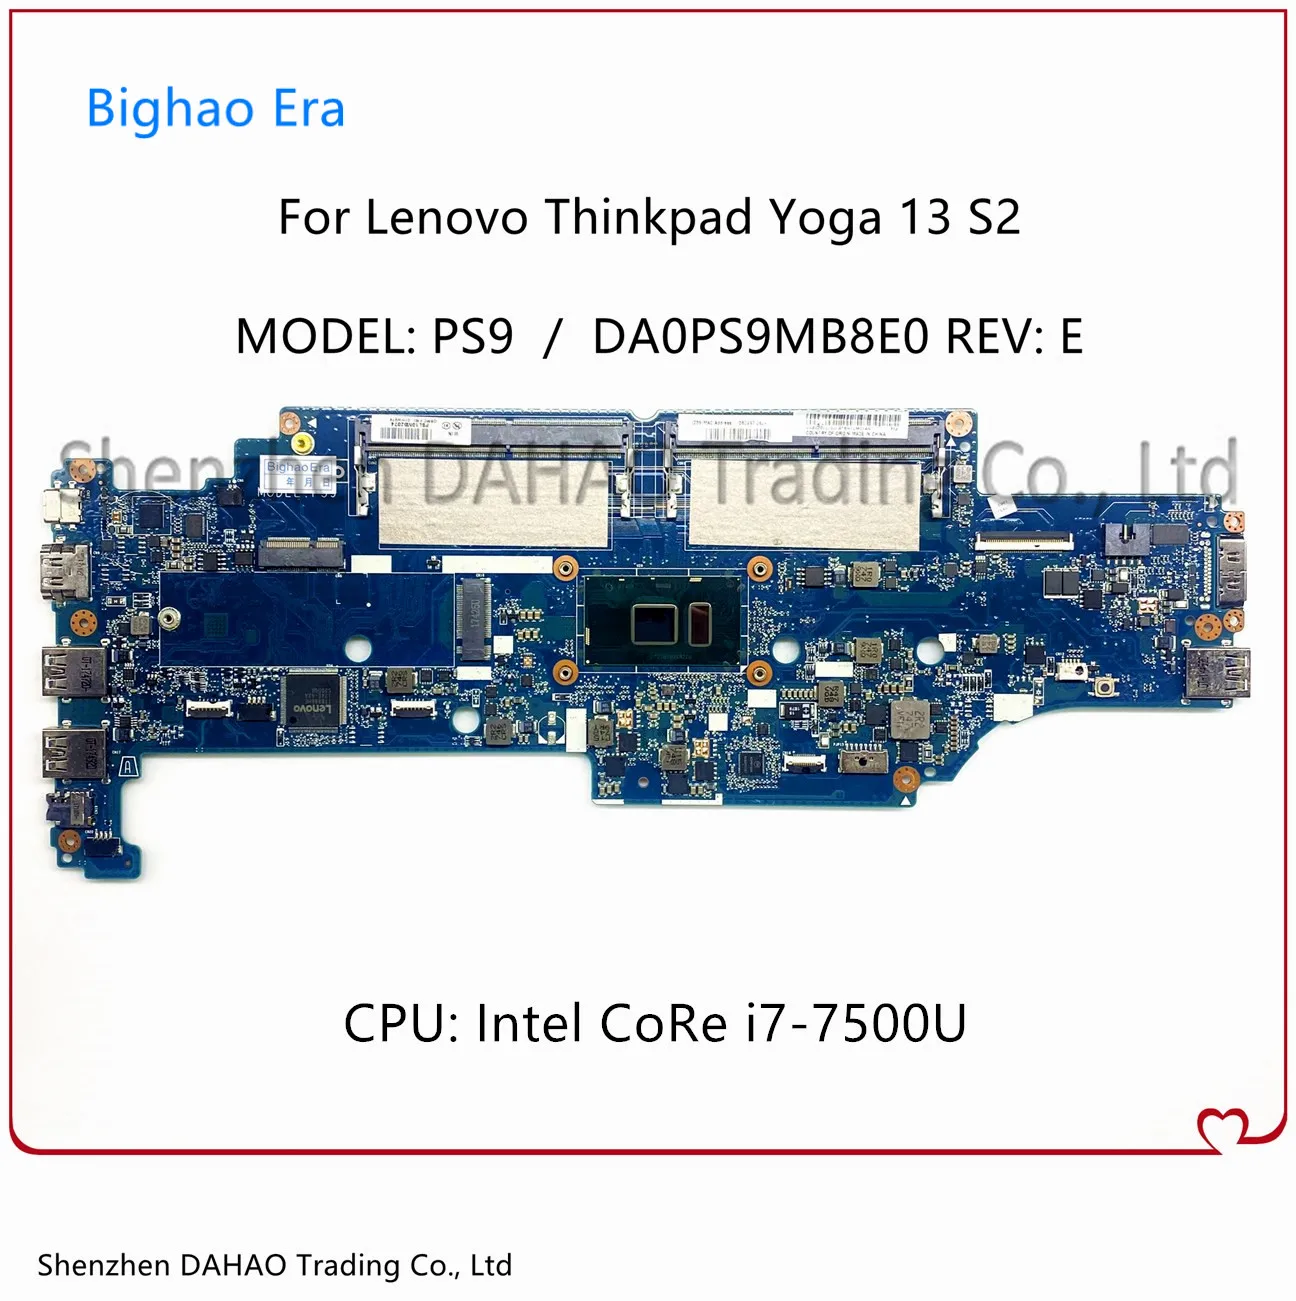 Материнская плата DA0PS9MB8E0 для ноутбуков Lenovo Thinkpad Yoga 13 Gen 2 S2 со стандартным DDR4 01YT020